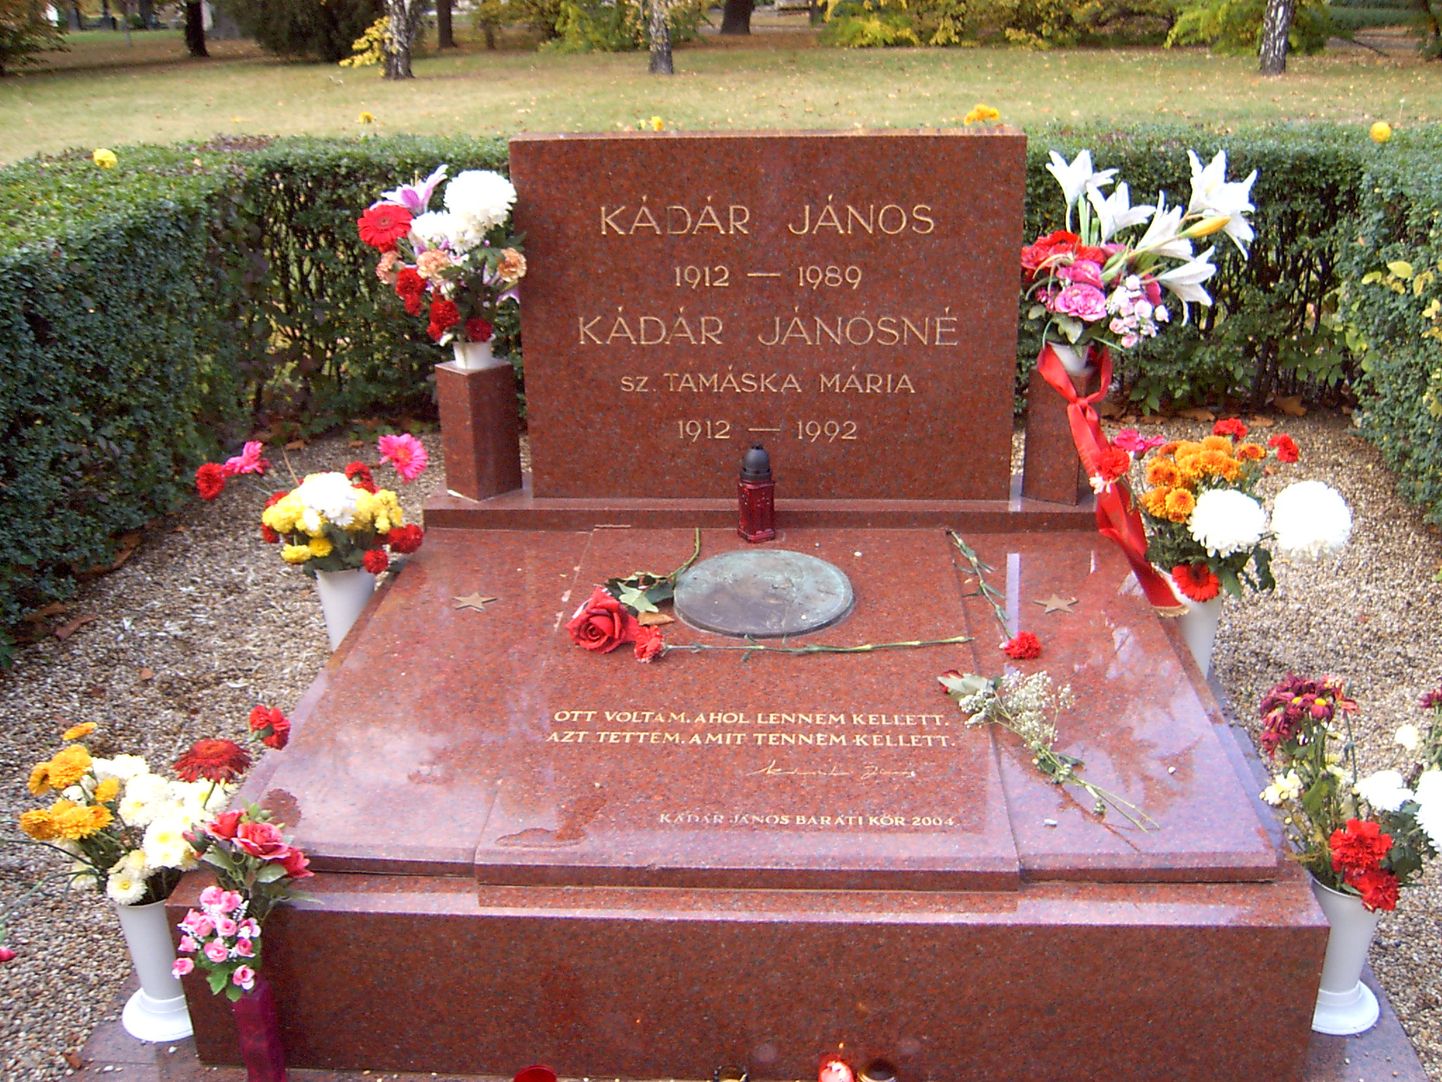 Janos Kadari haud.